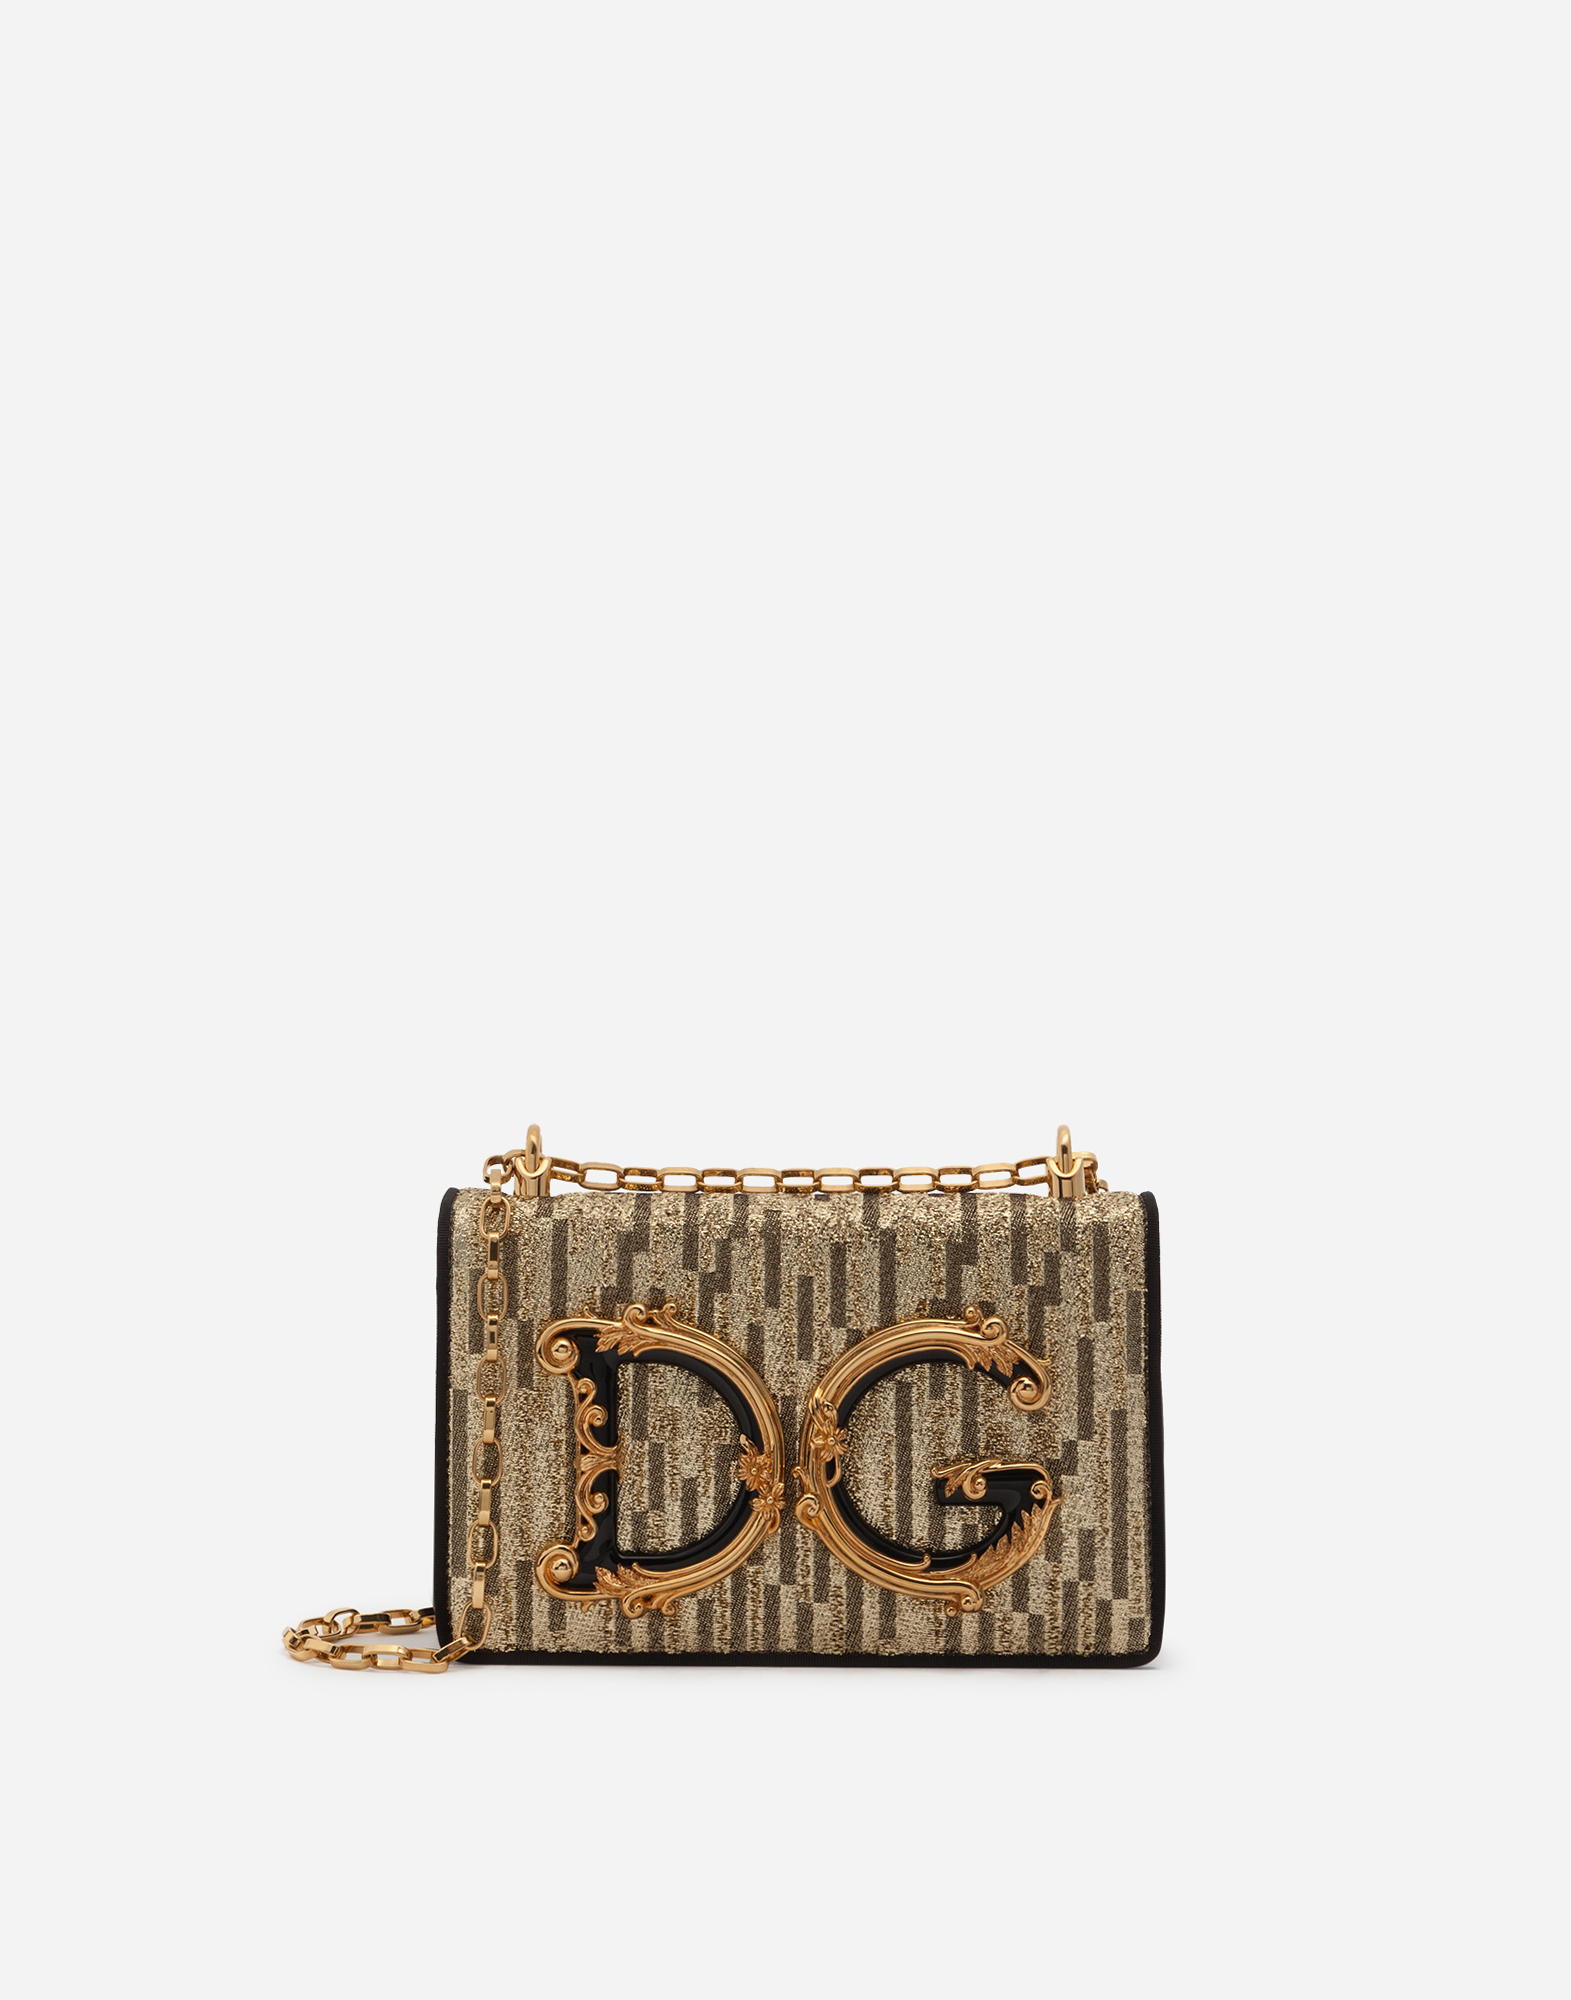 d&g wallet bag